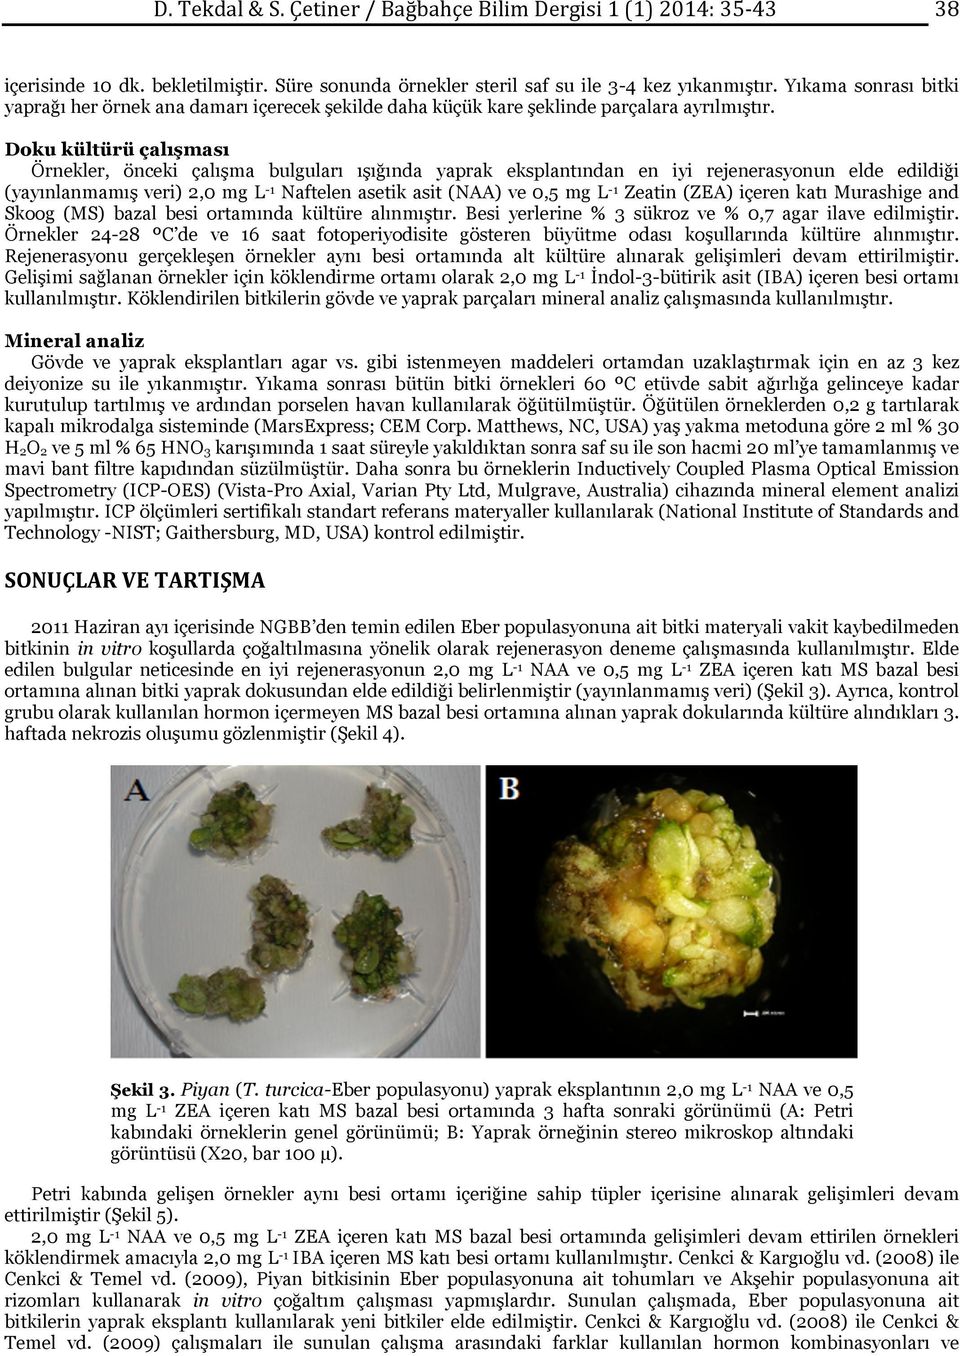 Doku kültürü çalışması Örnekler, önceki çalışma bulguları ışığında yaprak eksplantından en iyi rejenerasyonun elde edildiği (yayınlanmamış veri) 2,0 mg L -1 Naftelen asetik asit (NAA) ve 0,5 mg L -1